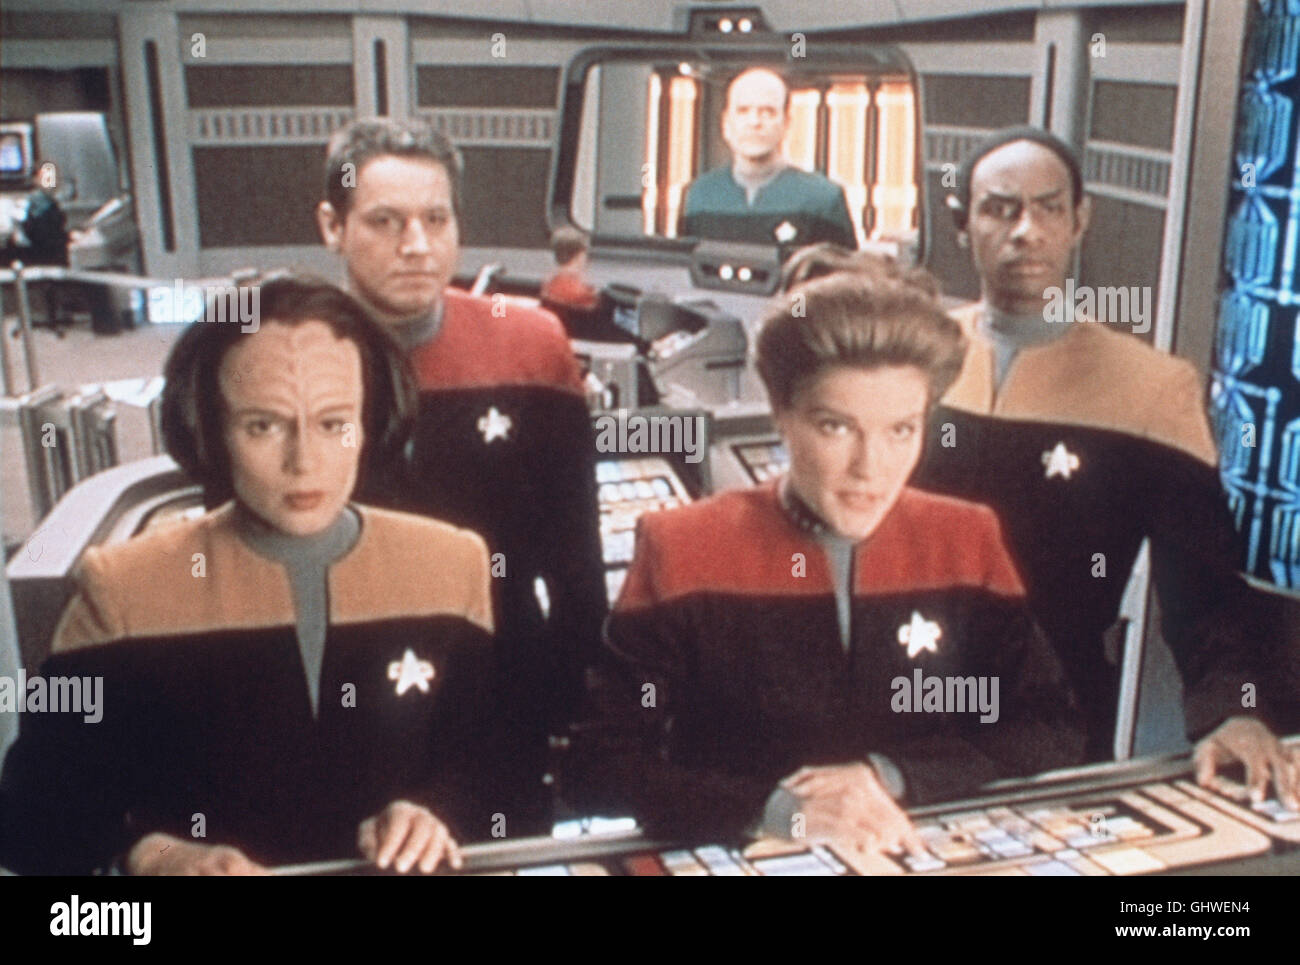 STAR TREK - RAUMSCHIFF VOYAGER- Durch einen Raumspalt taucht ein Raumschiff auf, das die Voyer zu zerstören droht. Szene mit ROXANN BIGGS-DAWSON, ROBERT BELTRAN, KATE MULGREW, TIM RUSS Regie: James L. Conway aka. Star Trek: Voyager Stock Photo